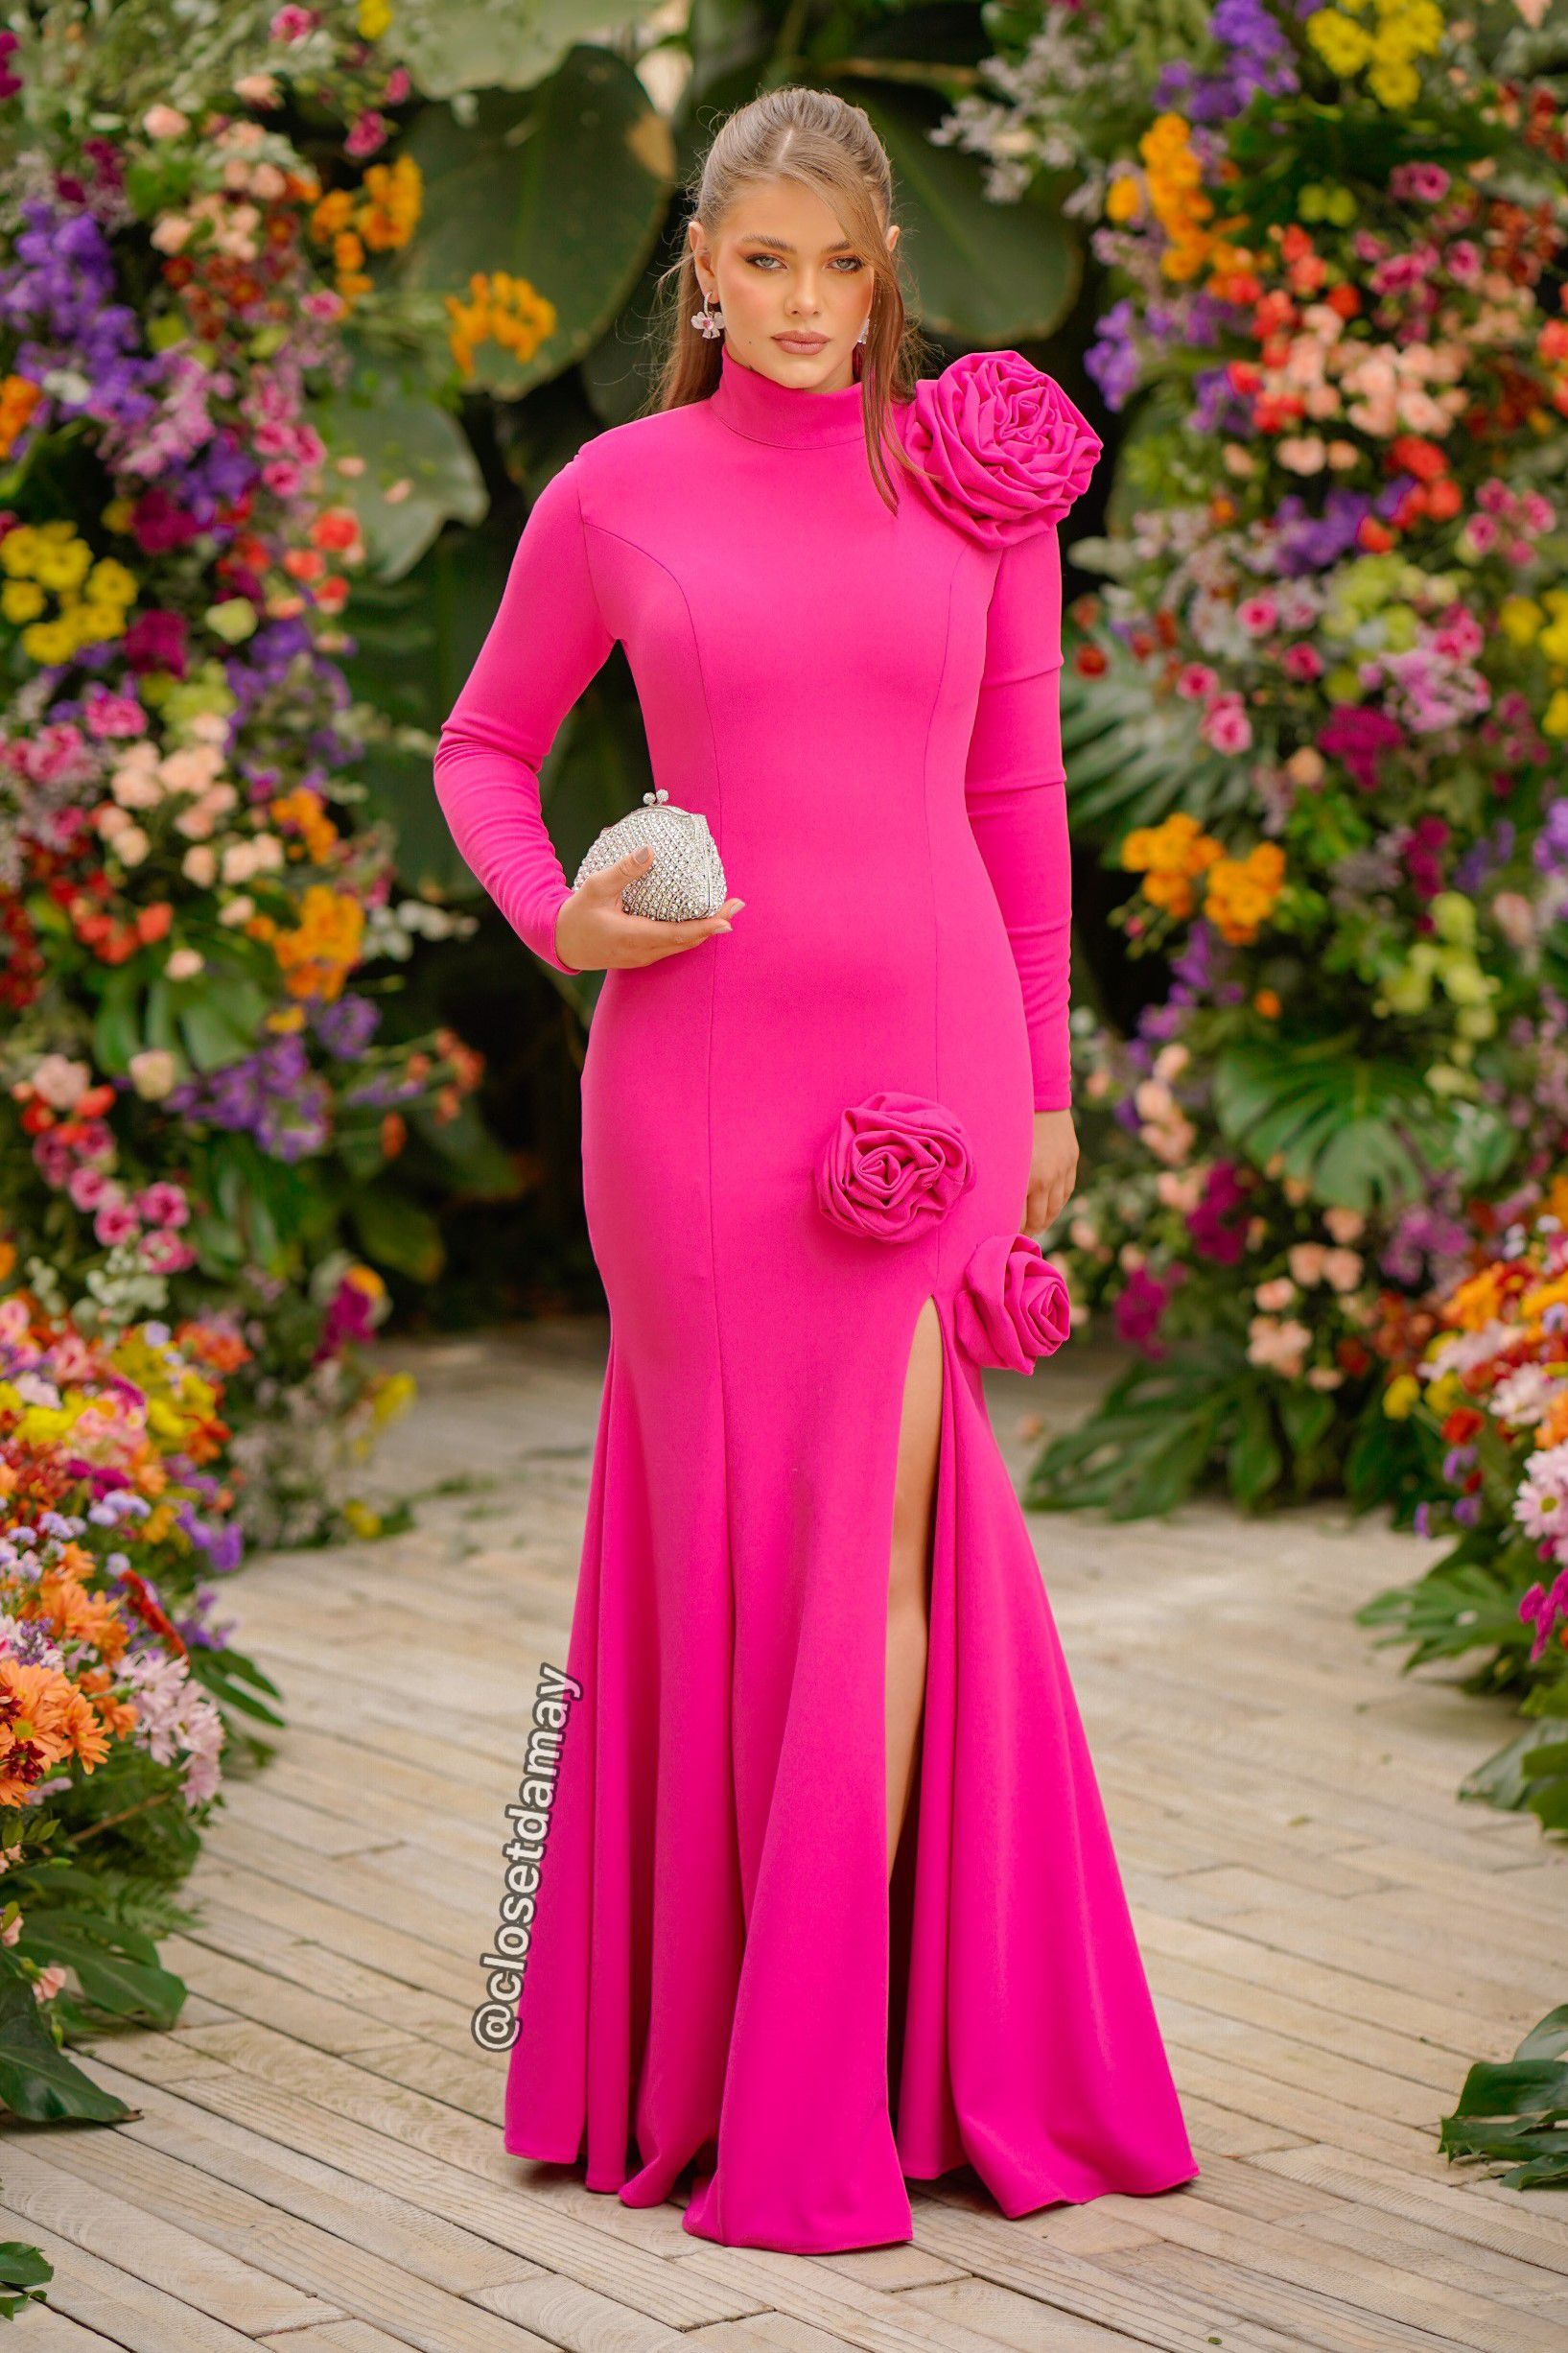 Vestido de festa longo, sereia com aplicação de flores - Rosa Pink -  Vestidos de festa e casamento civil